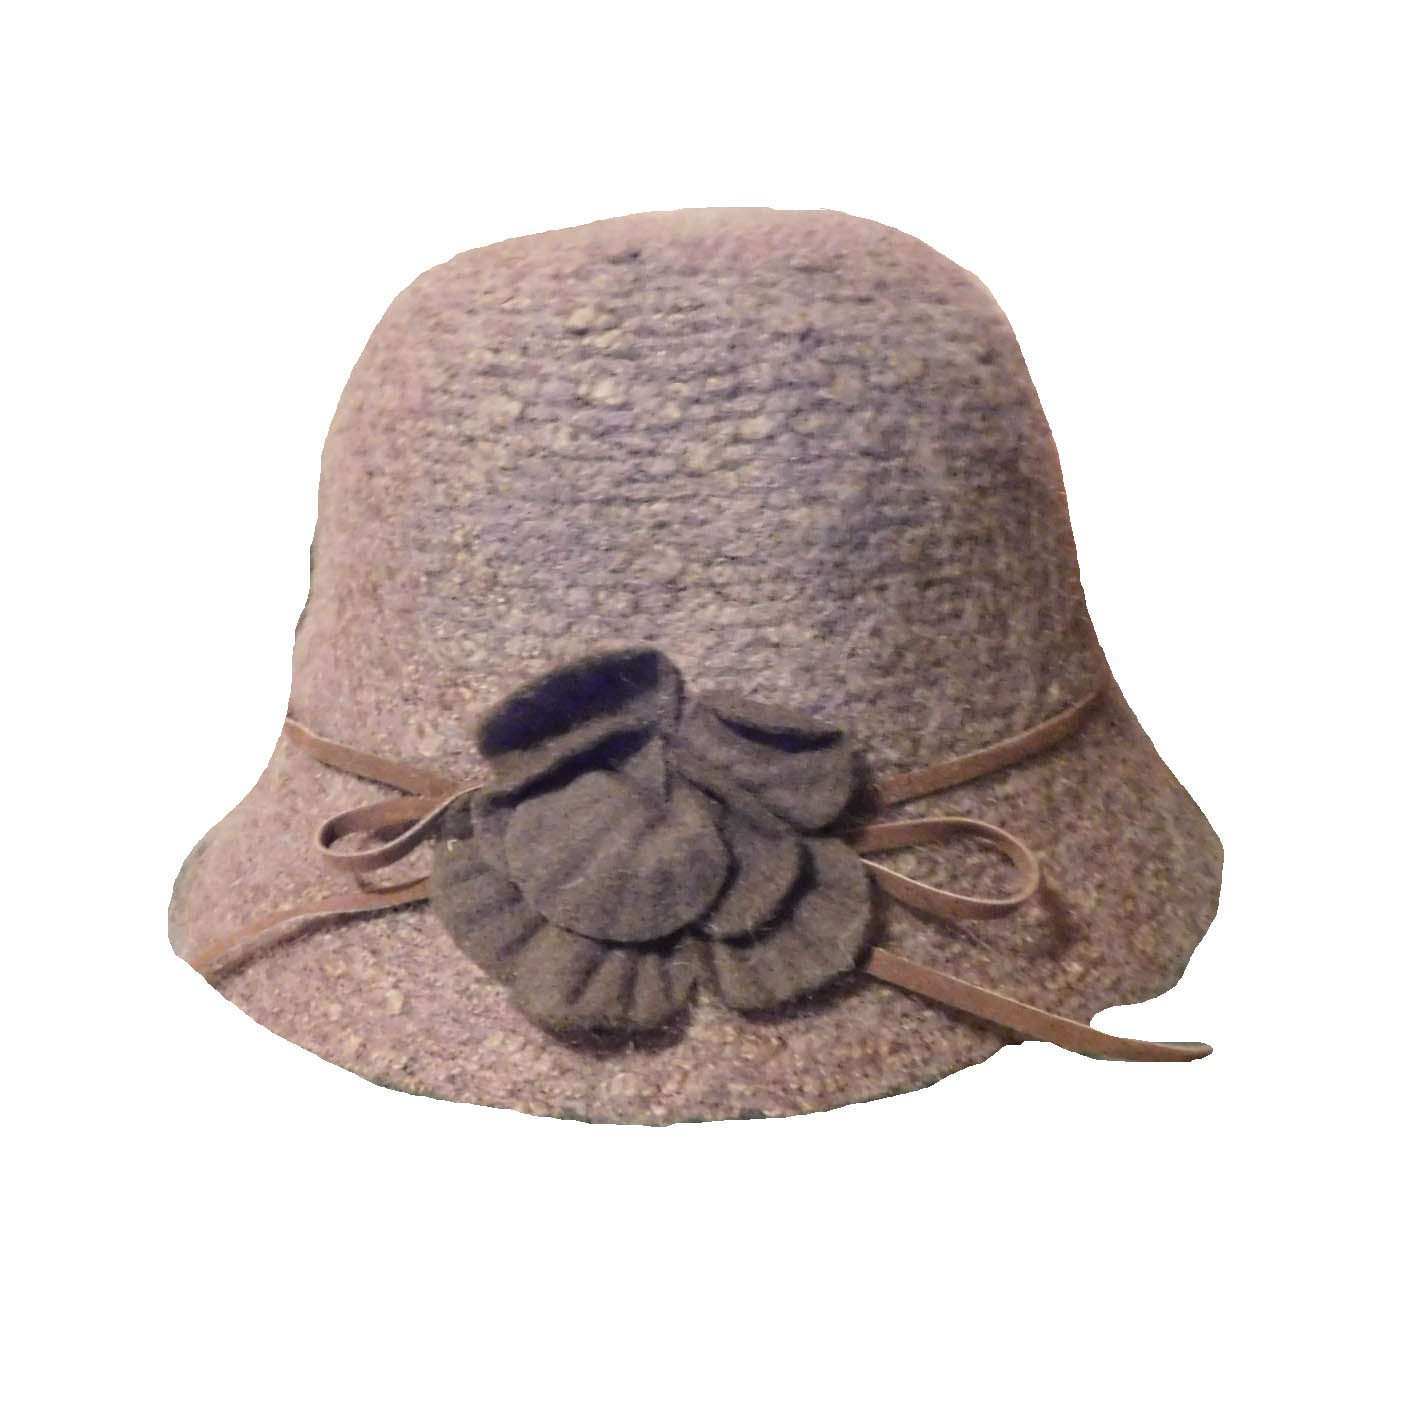 Mohair Cloche, Cloche - SetarTrading Hats 